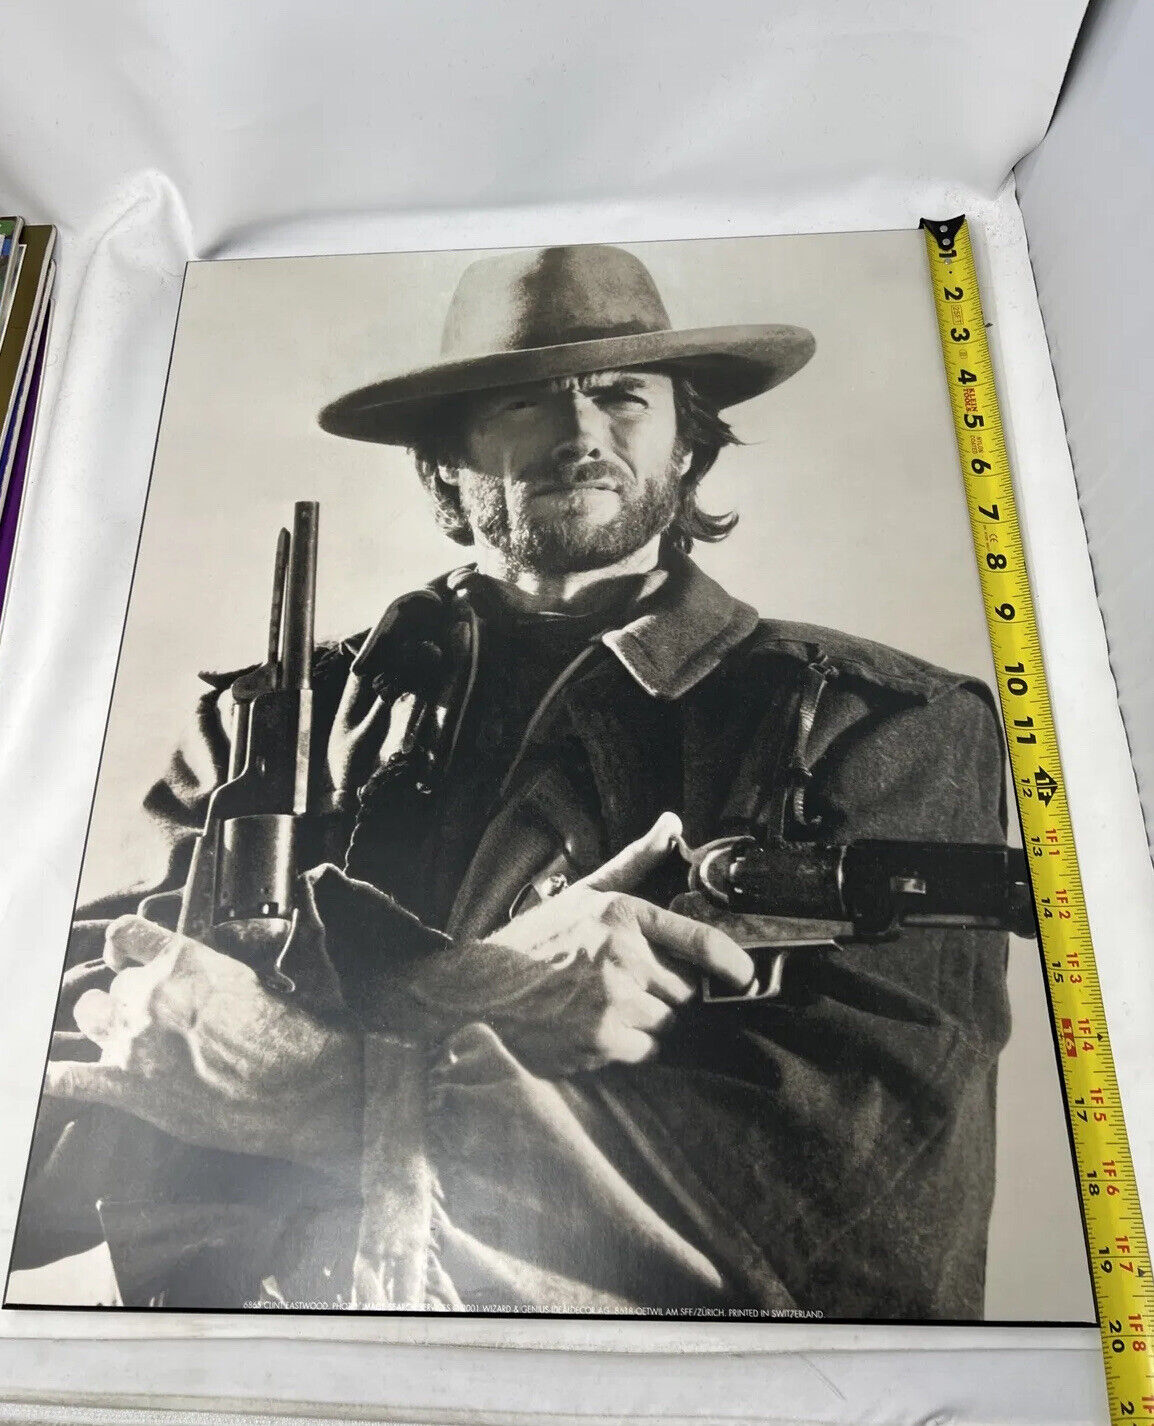 Clint Eastwood Entertainment Antique Photographs on Plak-it frames (16x20)